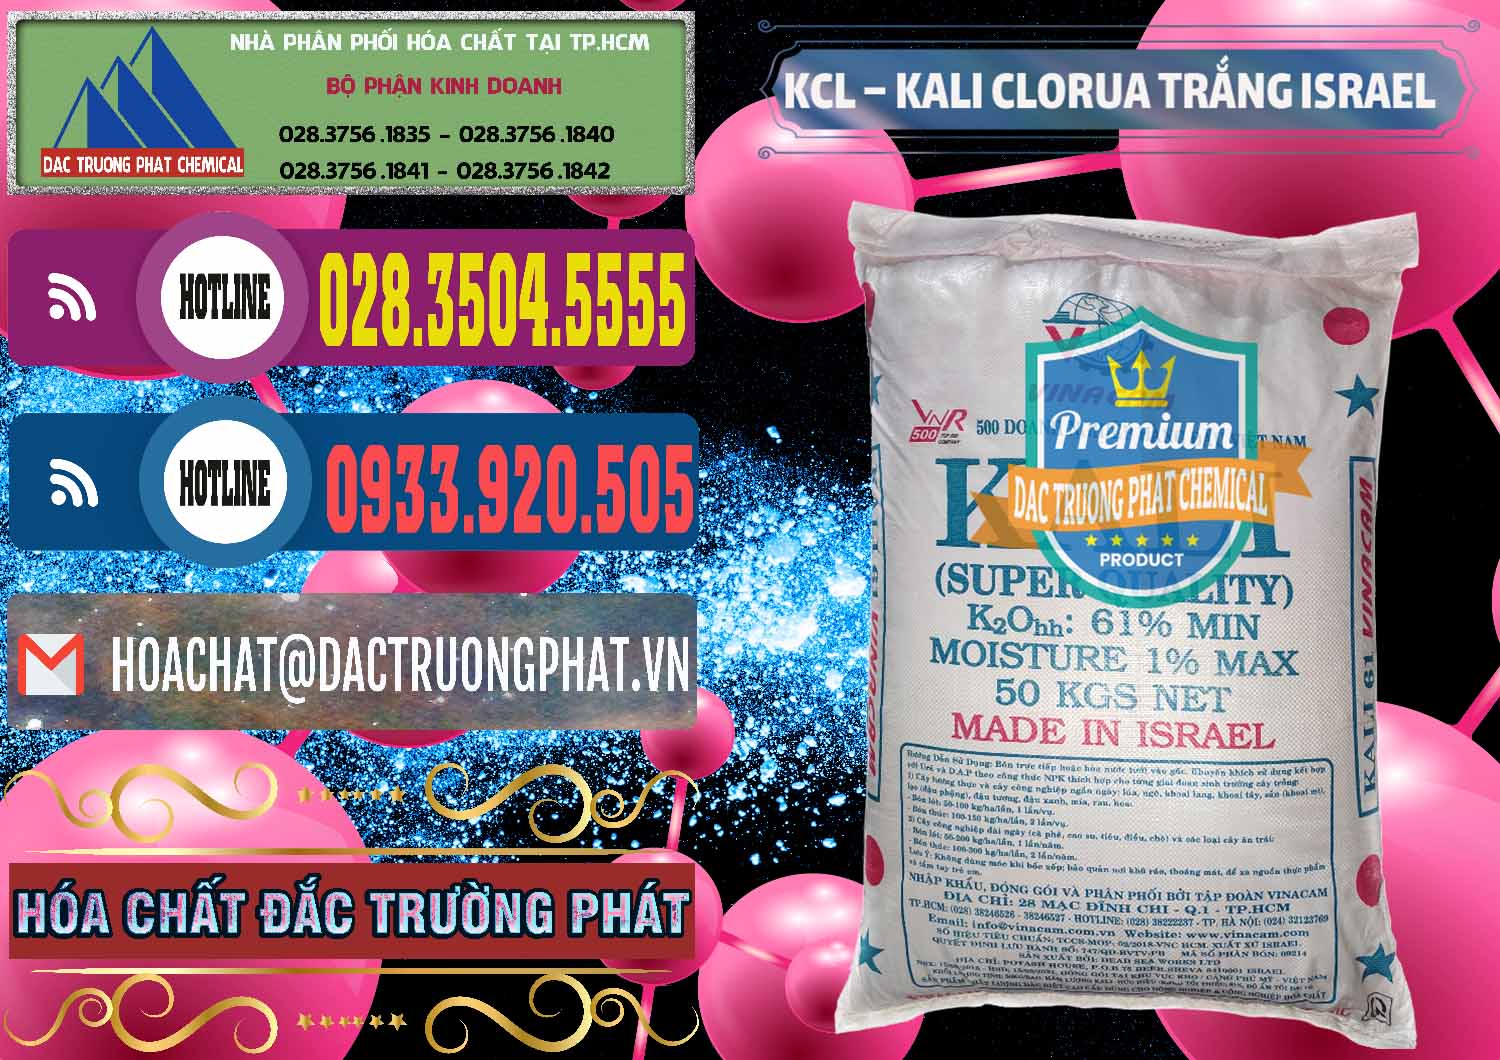 Cty chuyên cung cấp & bán KCL – Kali Clorua Trắng Israel - 0087 - Đơn vị chuyên bán - phân phối hóa chất tại TP.HCM - muabanhoachat.com.vn